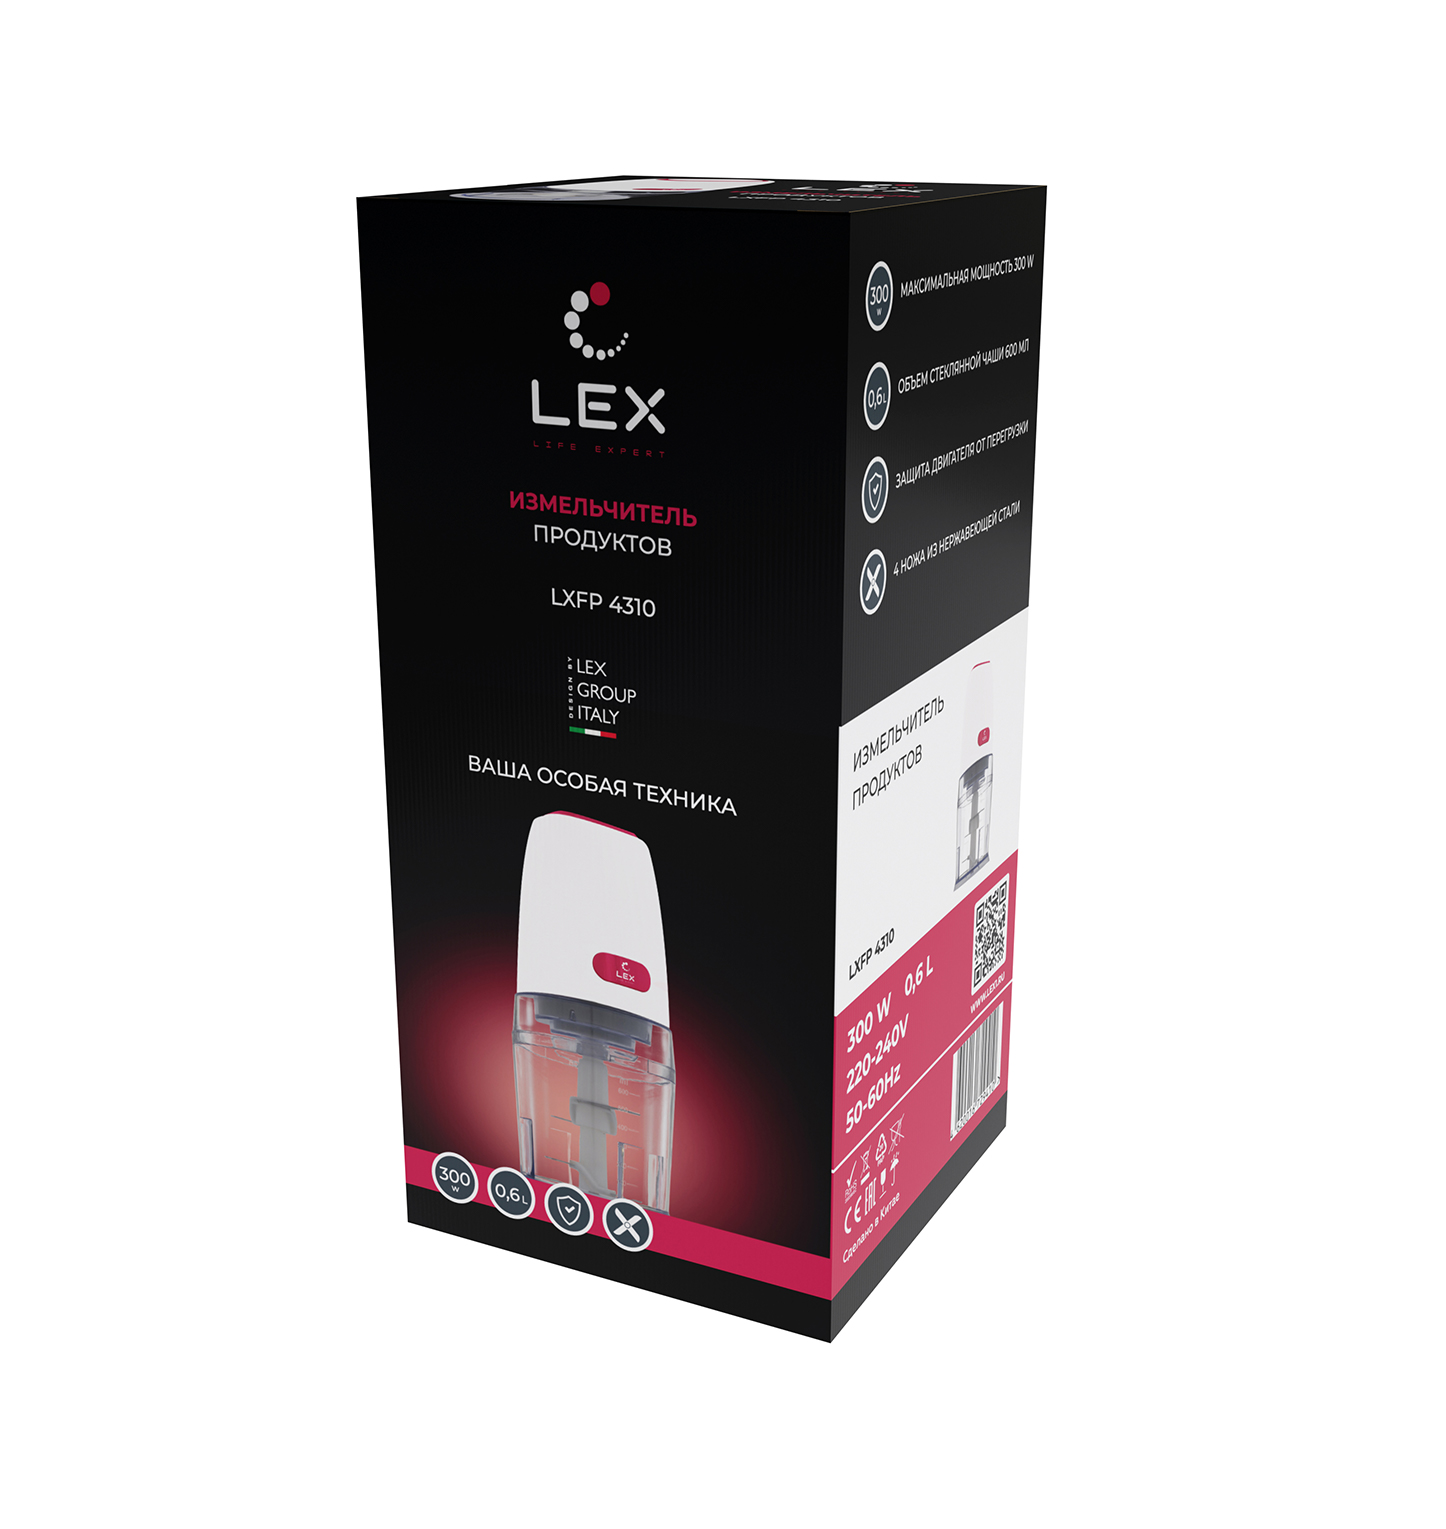 Измельчитель продуктов LEX LXFP 4310